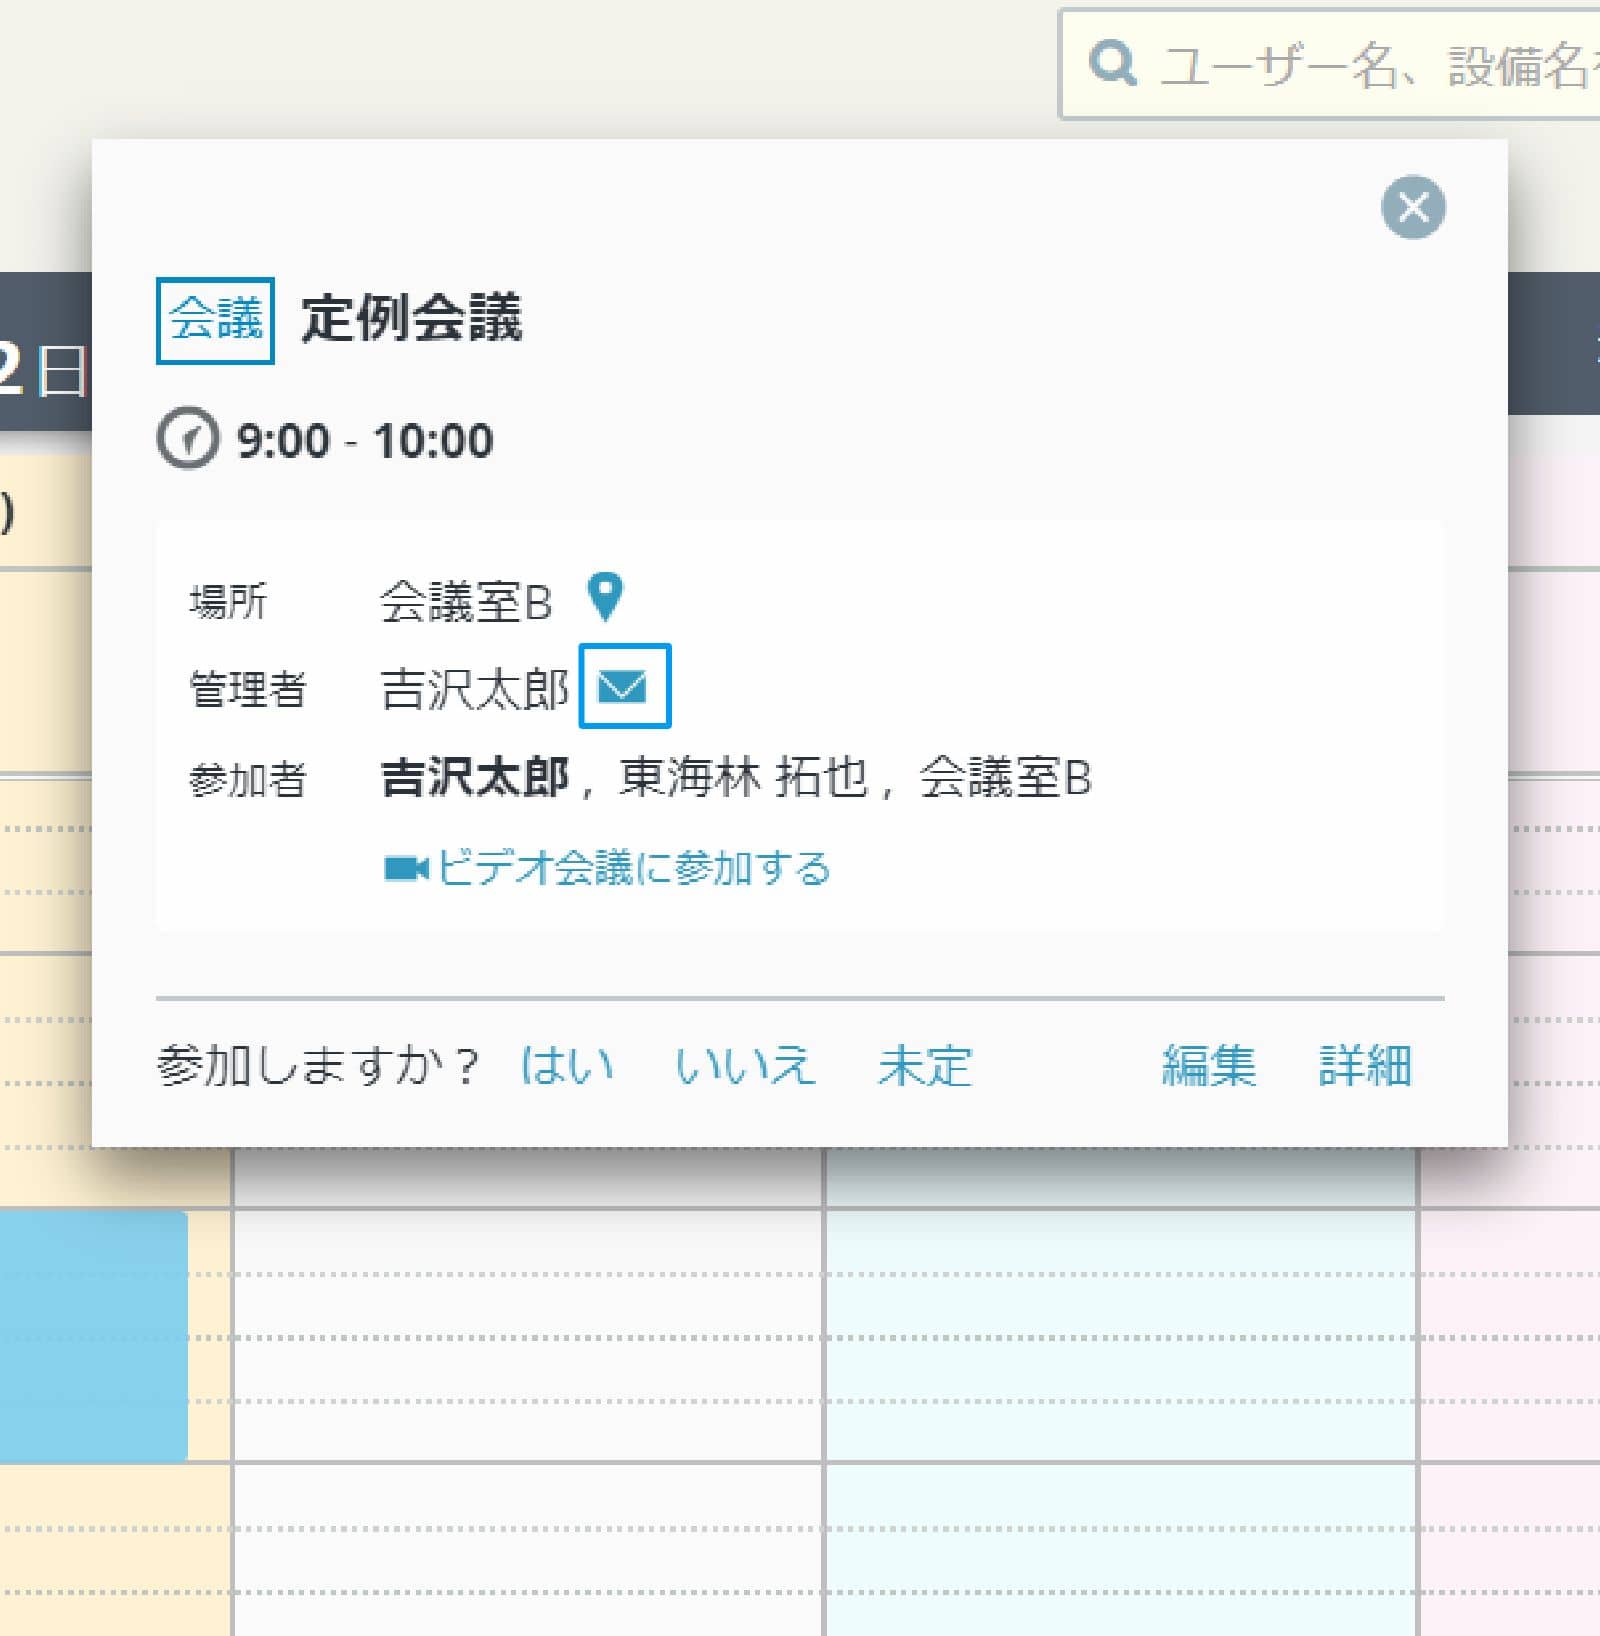 rakumo カレンダー 予定の詳細画面